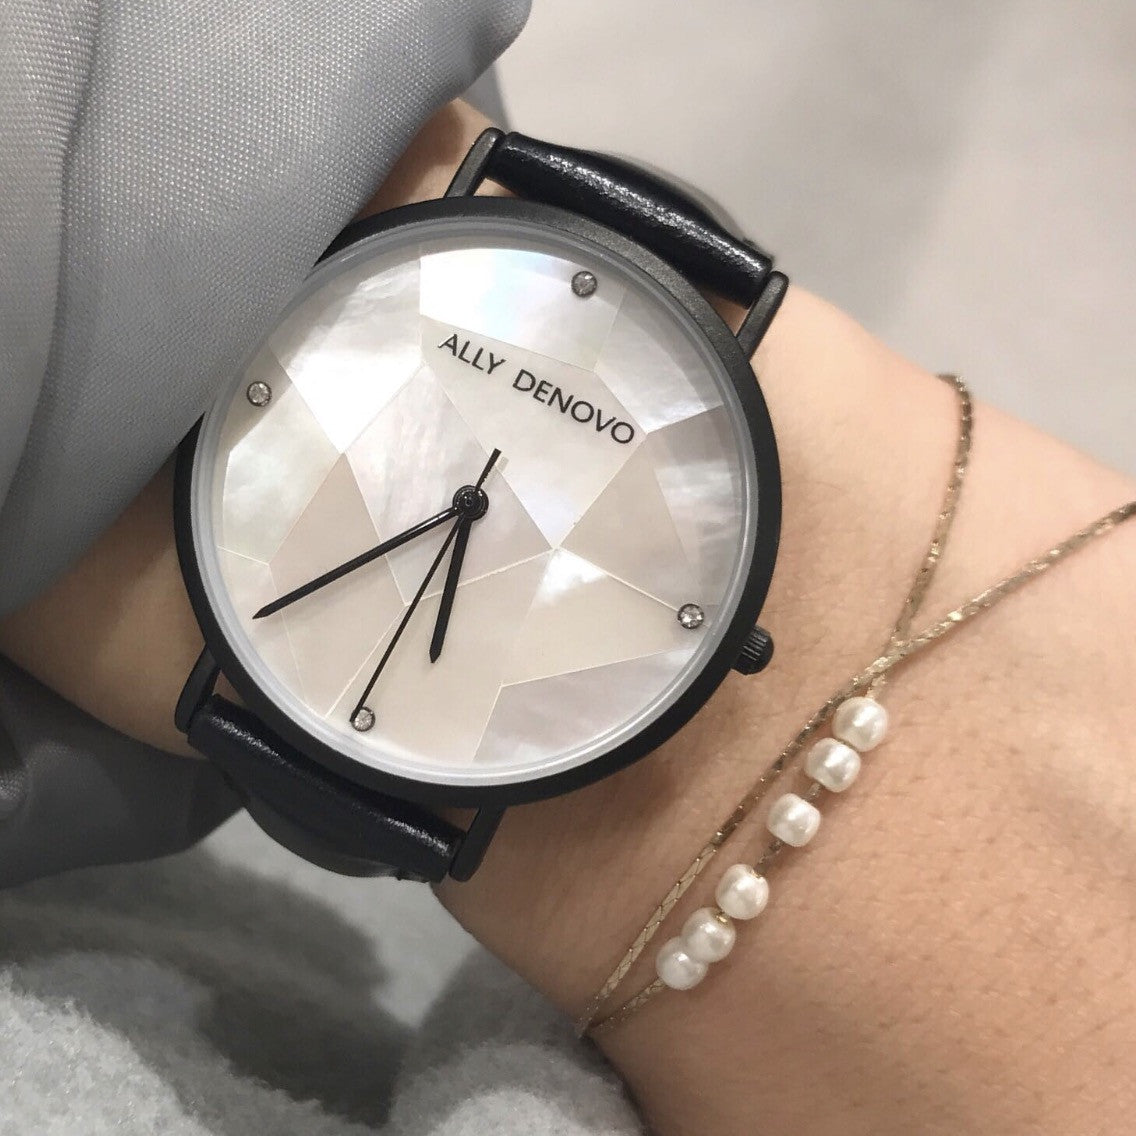 Gaia pearl皮革腕錶-白色菱形琉璃黑框黑色真皮錶帶 AF5003.4